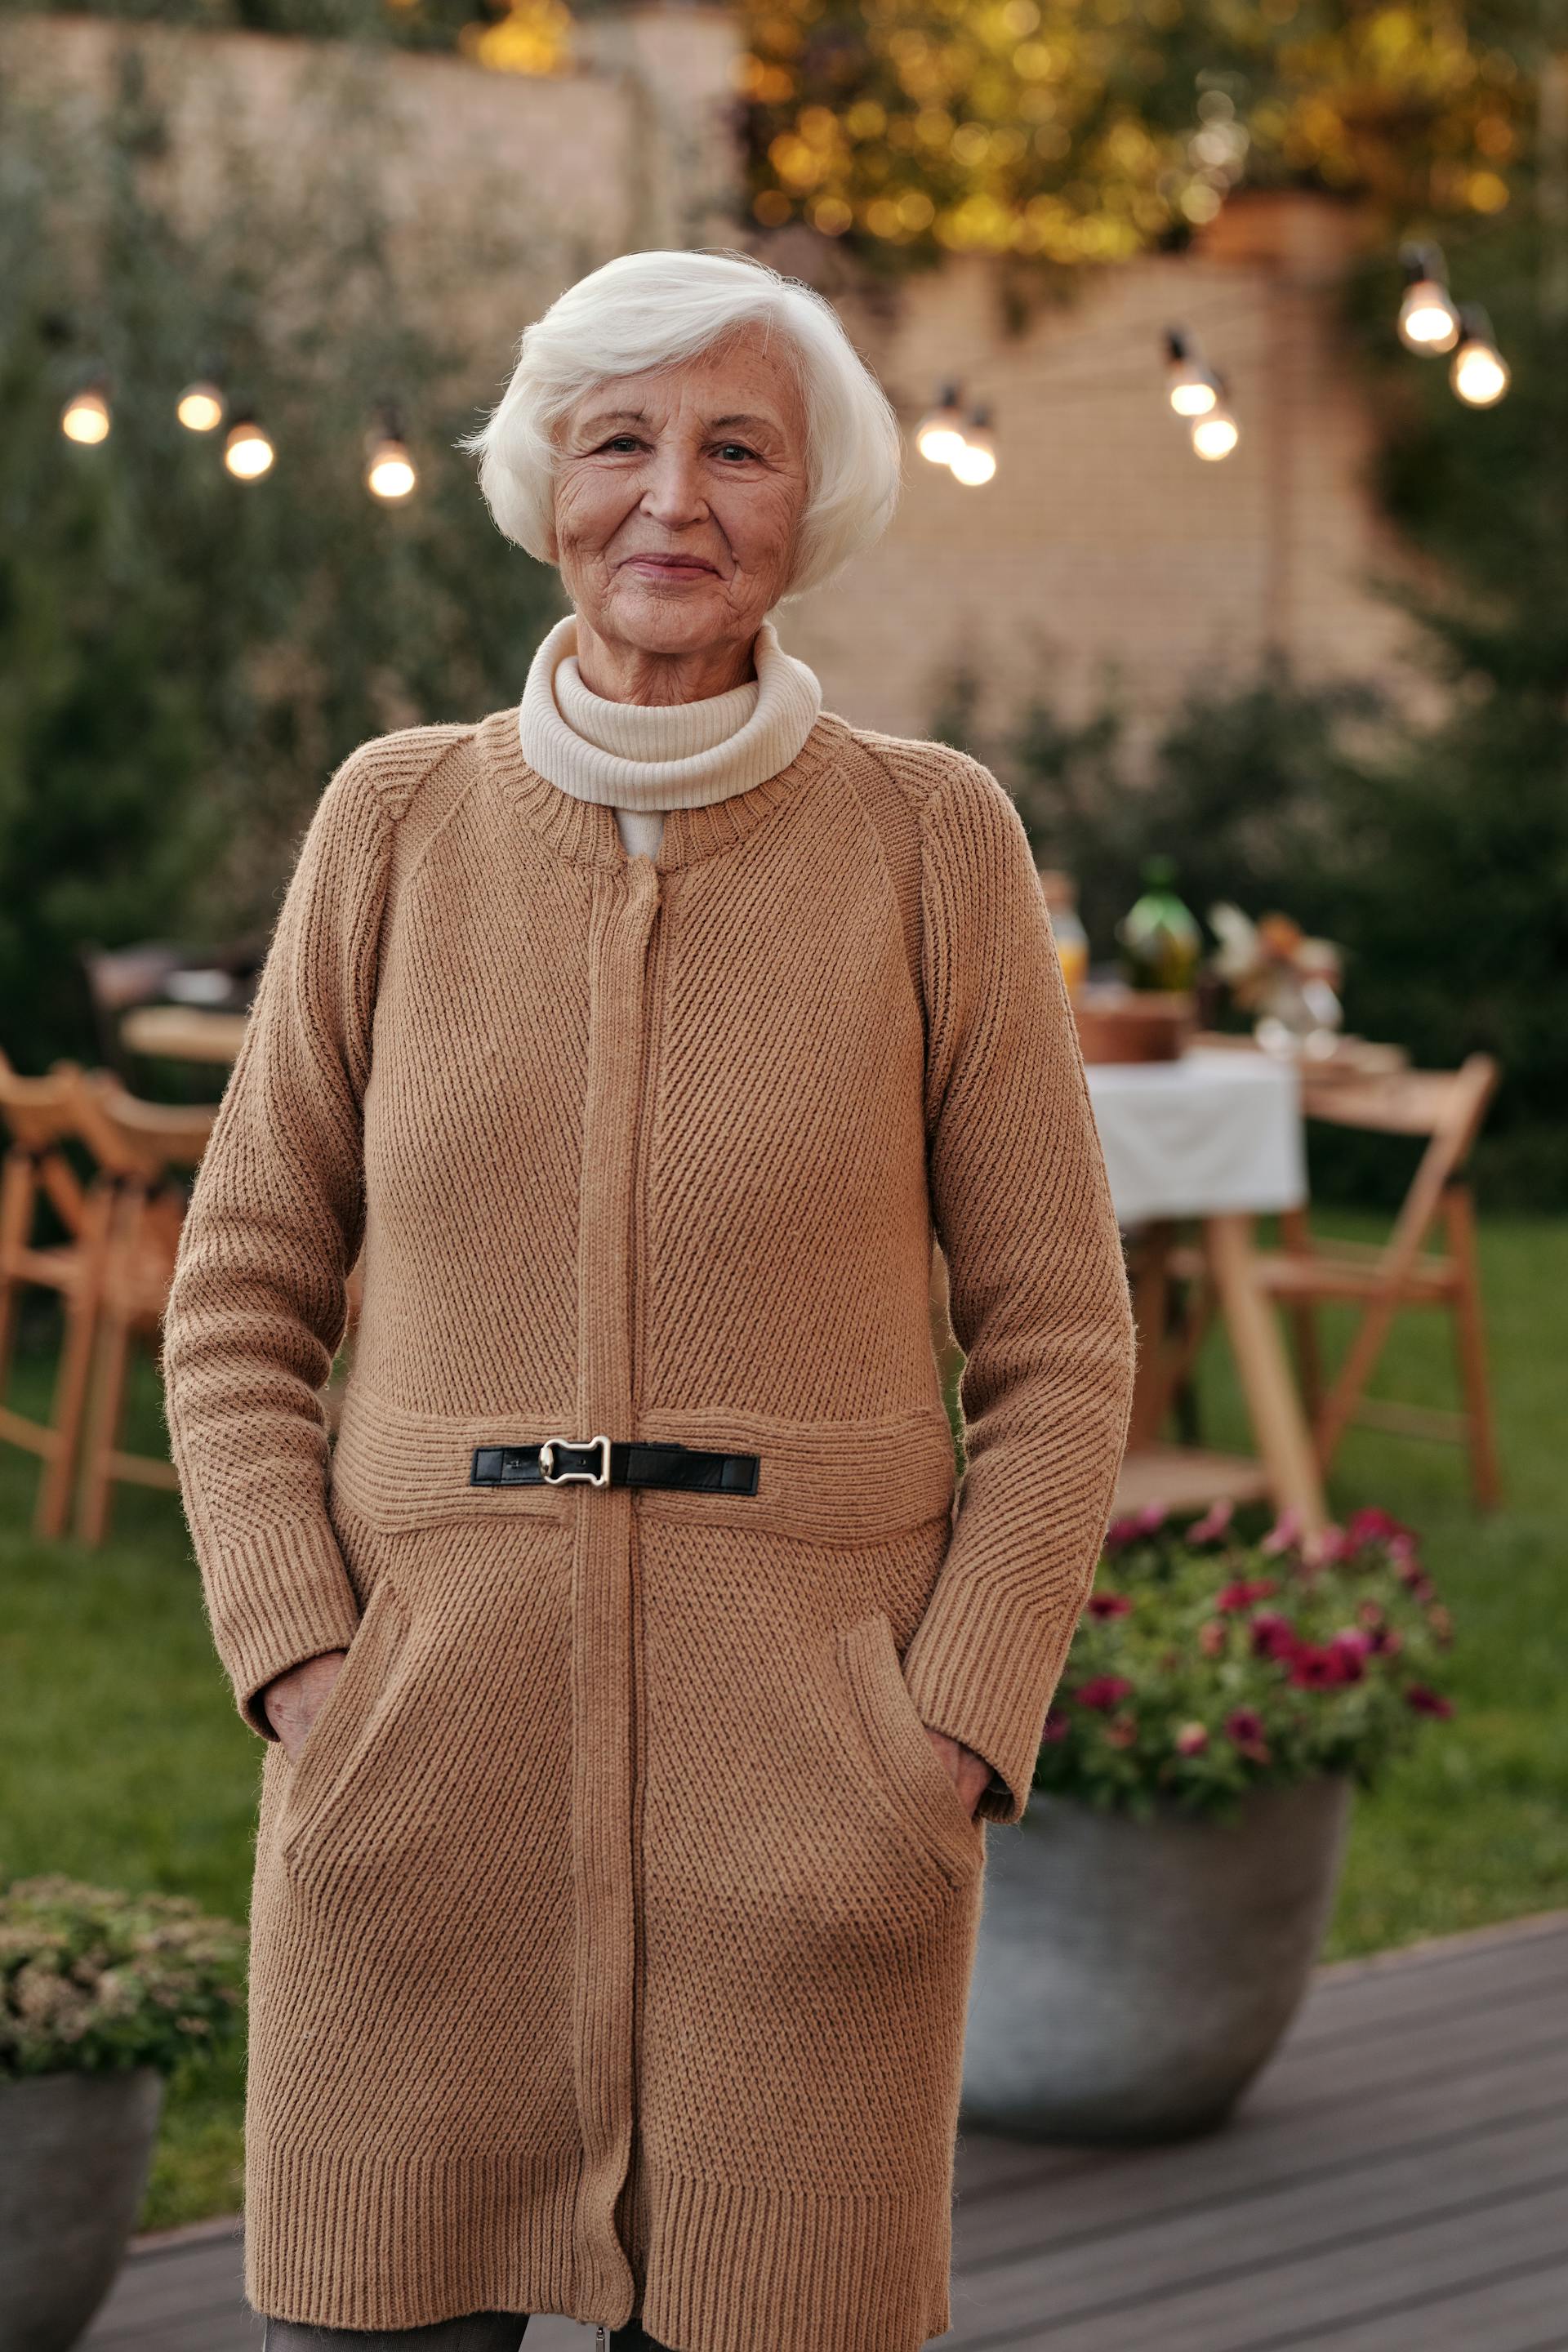 Eine ältere Frau, die in einem Garten steht | Quelle: Pexels